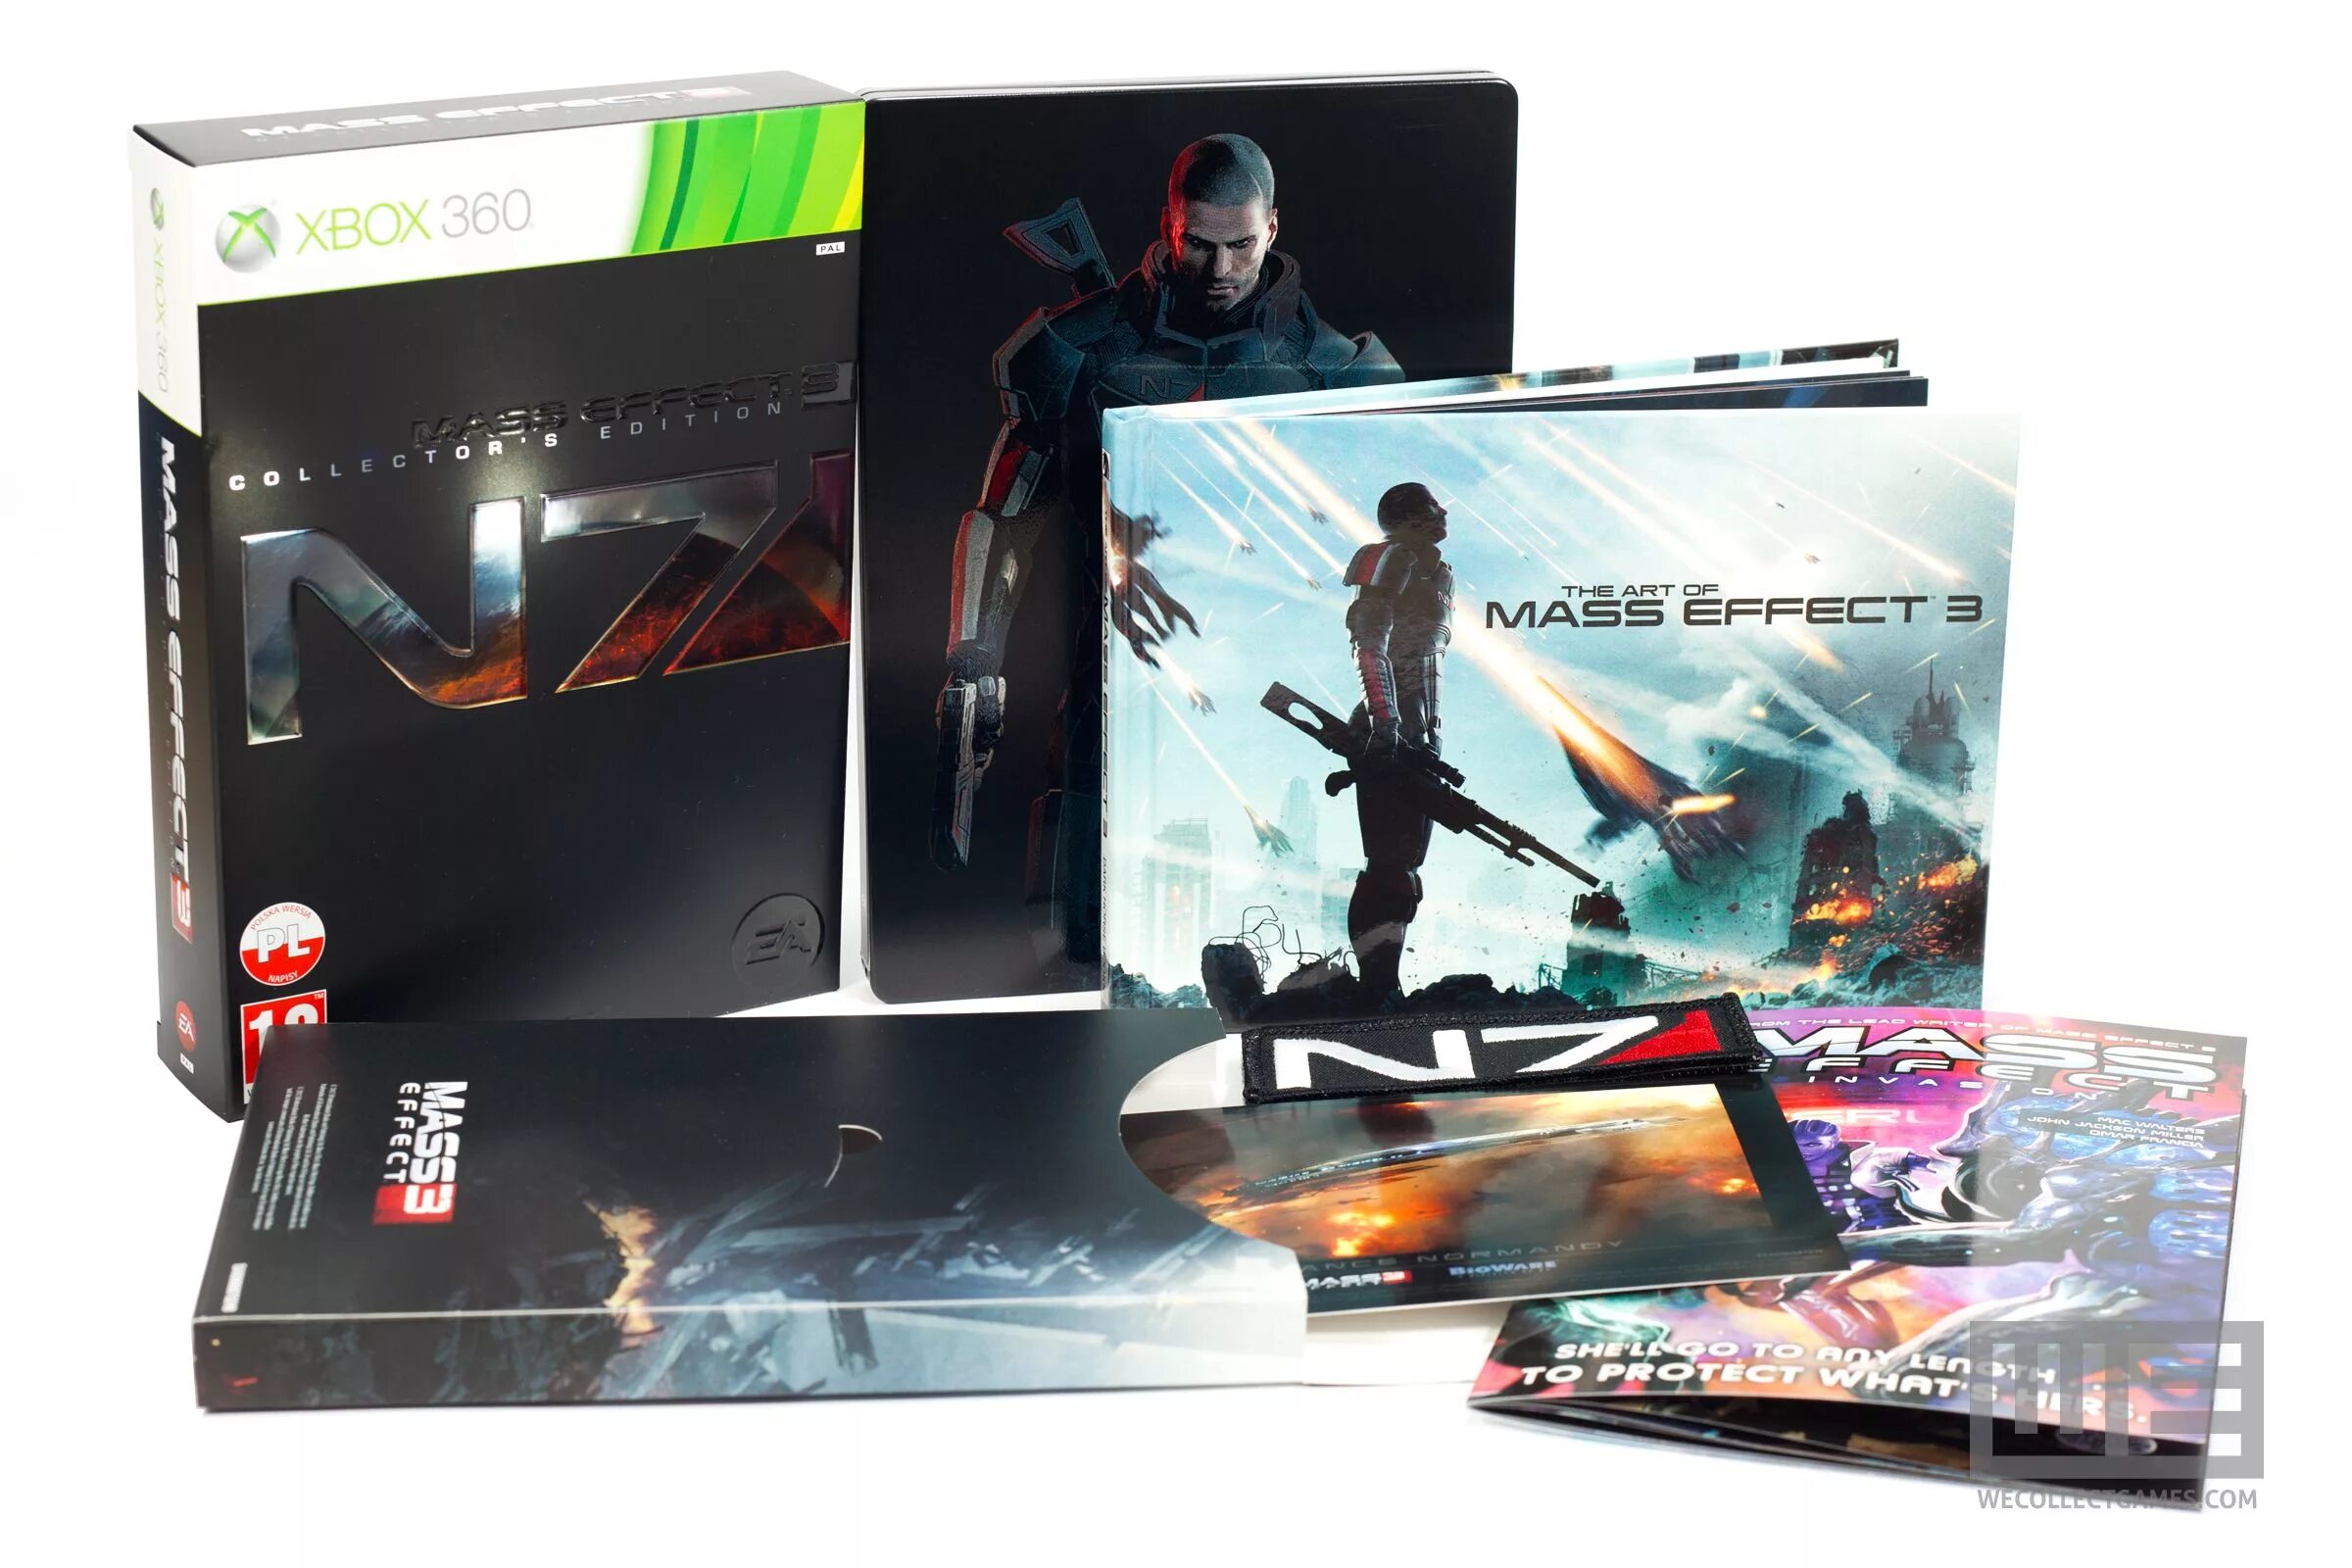 Xbox 360 Mass Effect Edition. Mass Effect 3 n7 коллекционное издание (Xbox 360). Коллекционки Xbox 360. Mass Effect 1 коллекционное издание. Xbox 360 collection